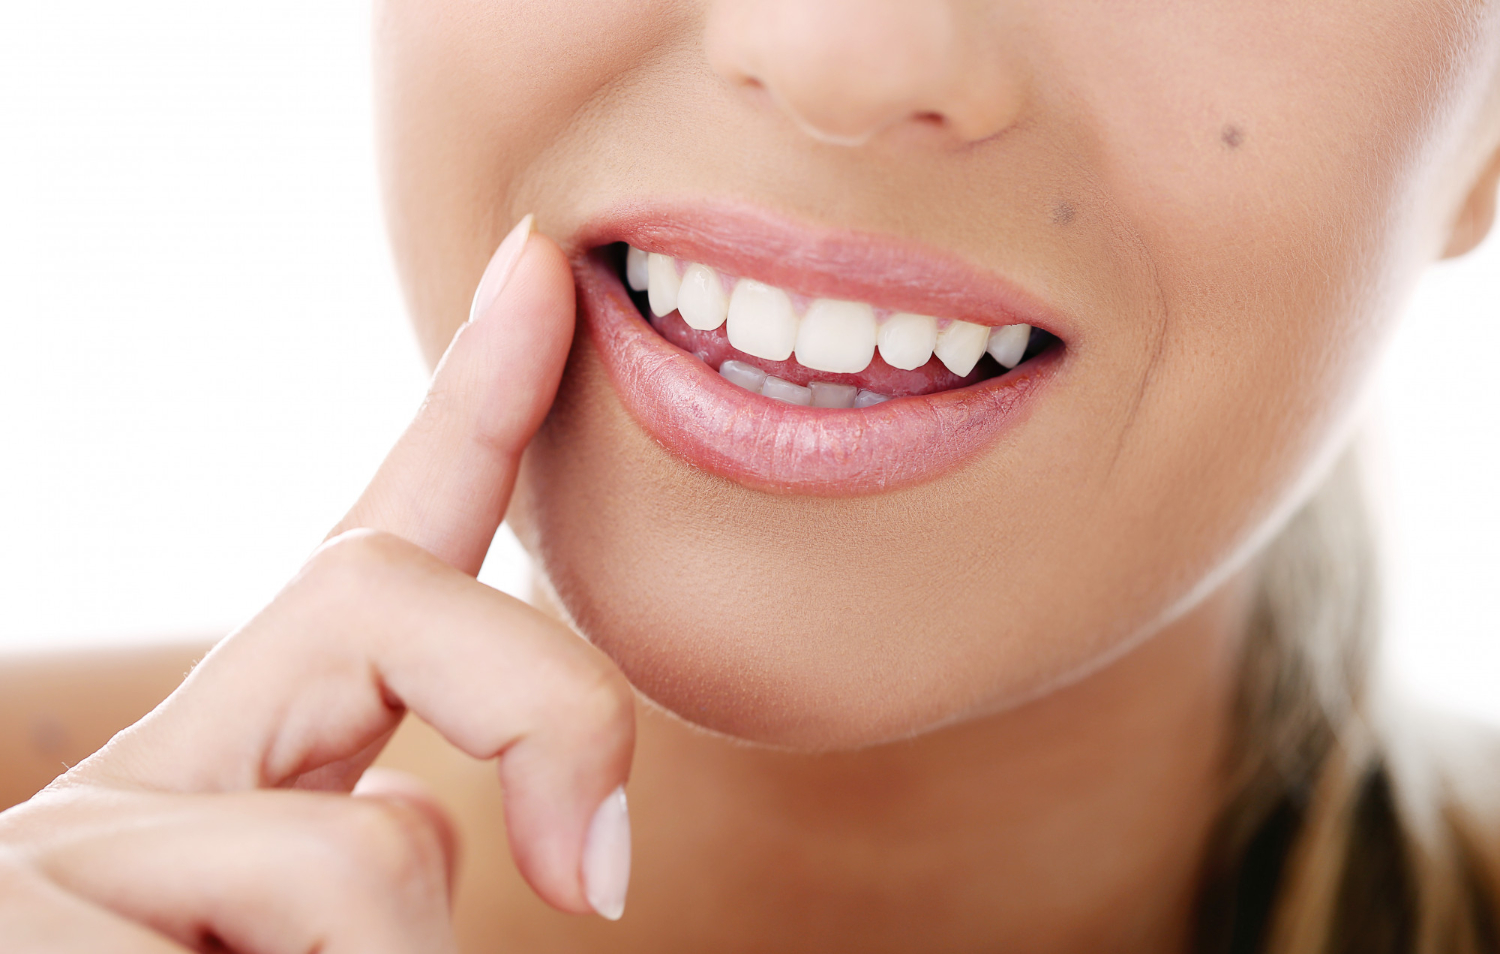 Răng sứ HT Smile giúp lấy lại nụ cười tự tin và thẩm mỹ cho gương mặt của bạn